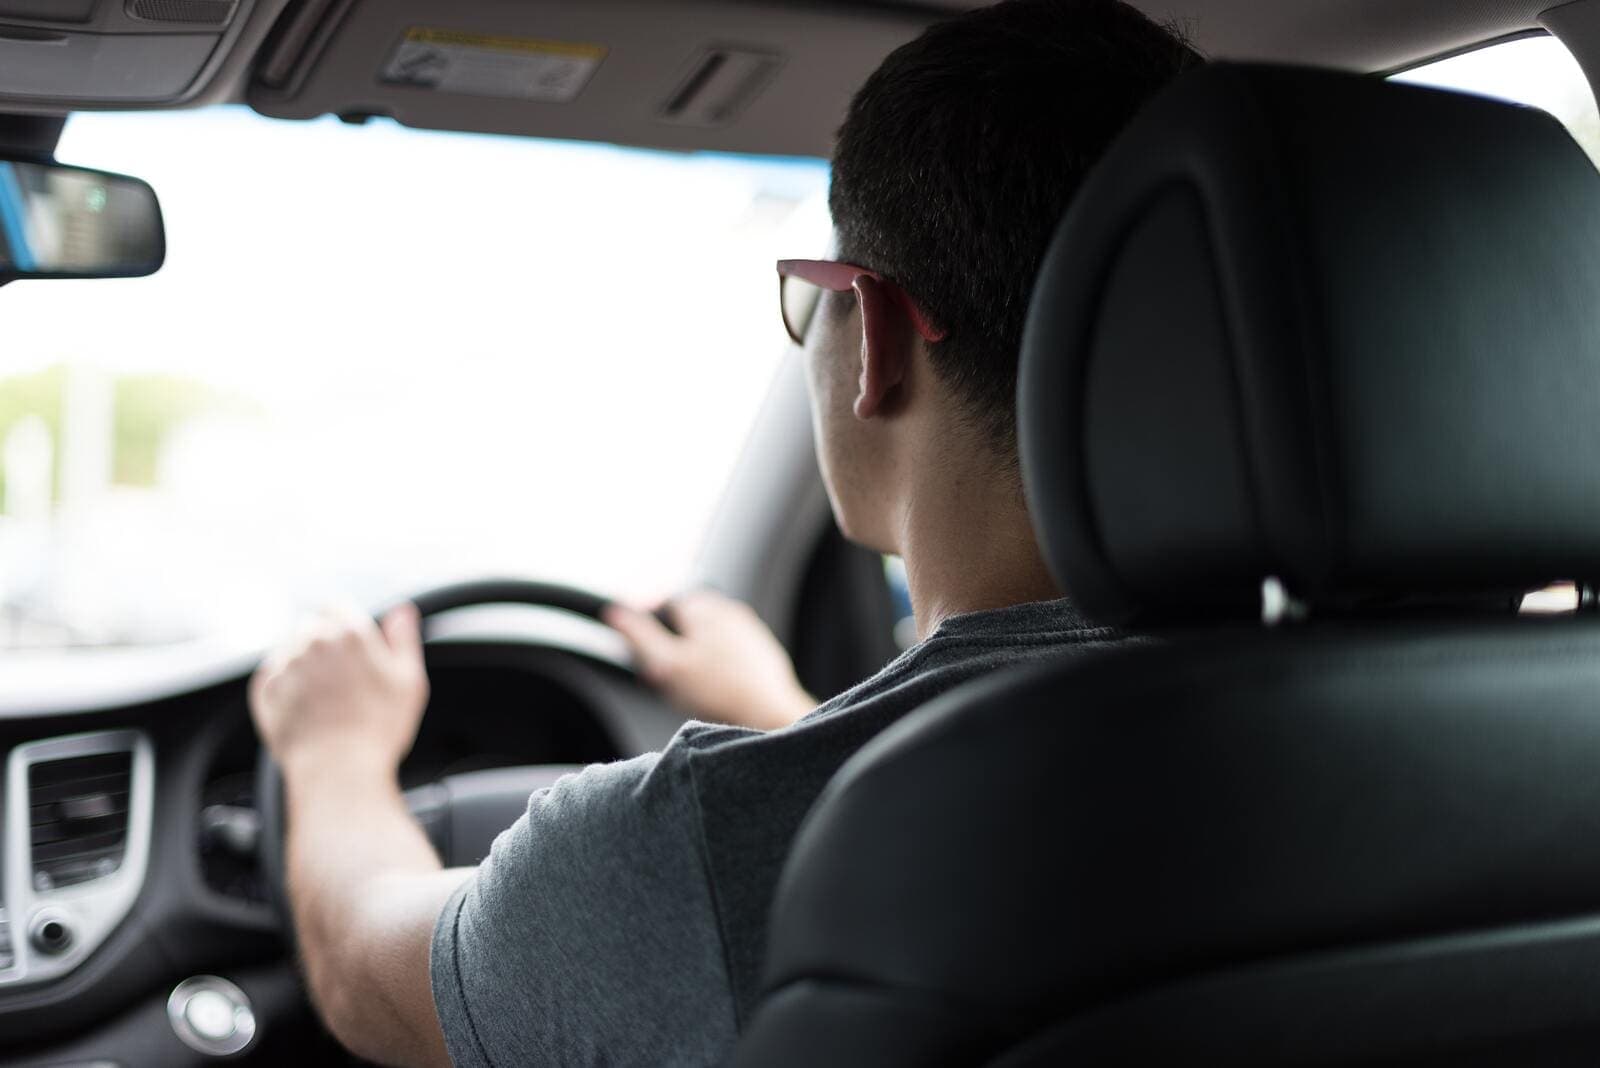 Опрос показал, что чешские водители недооценивают проверки зрения